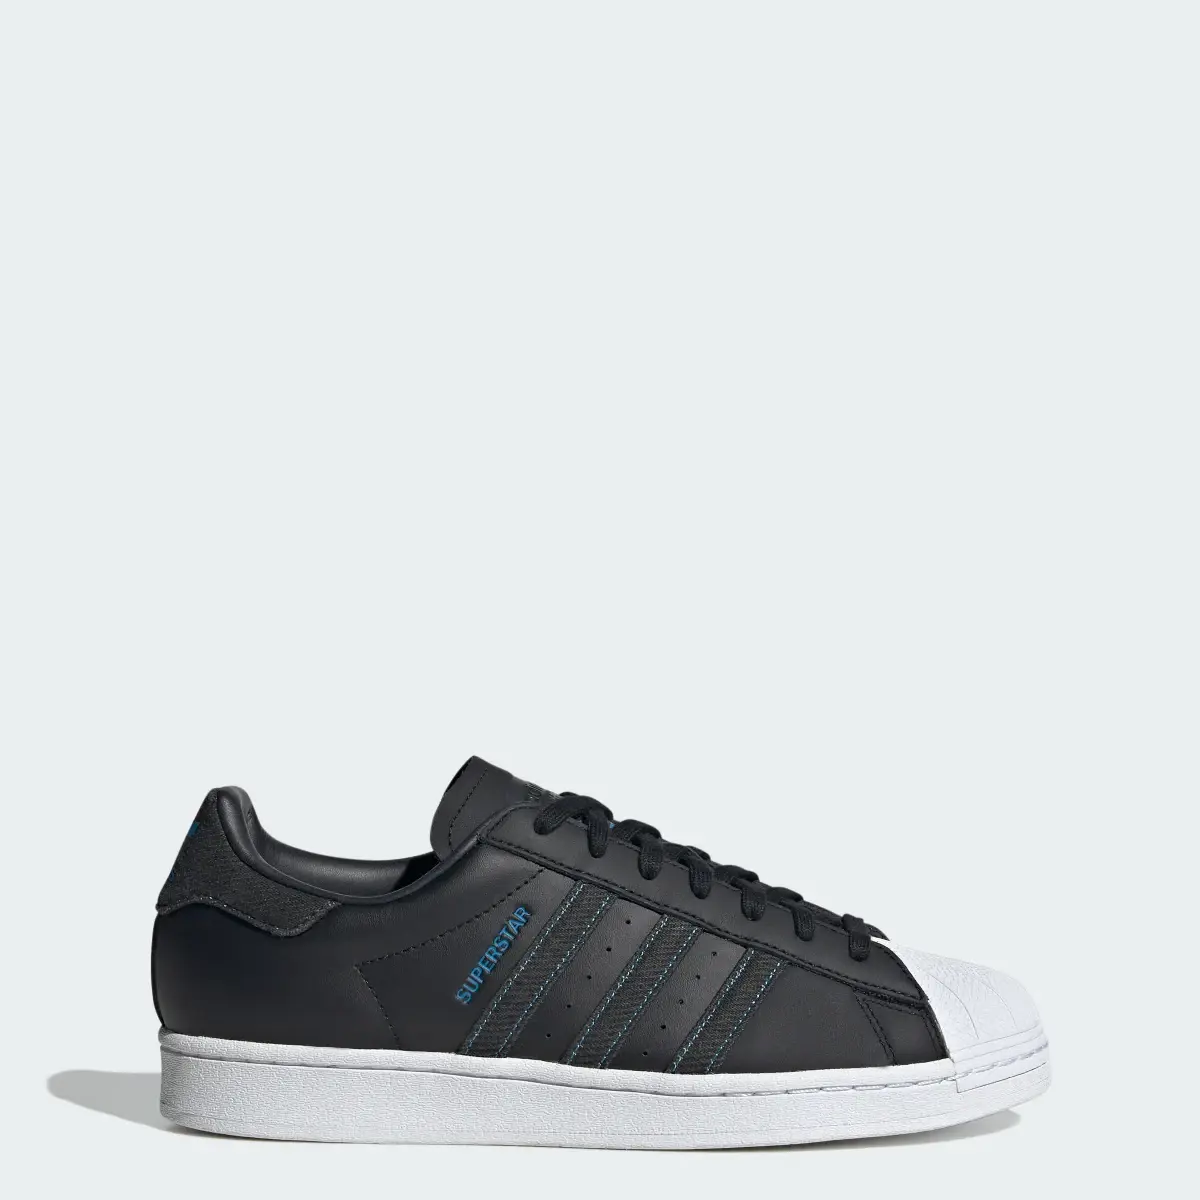 Adidas Superstar Ayakkabı. 1